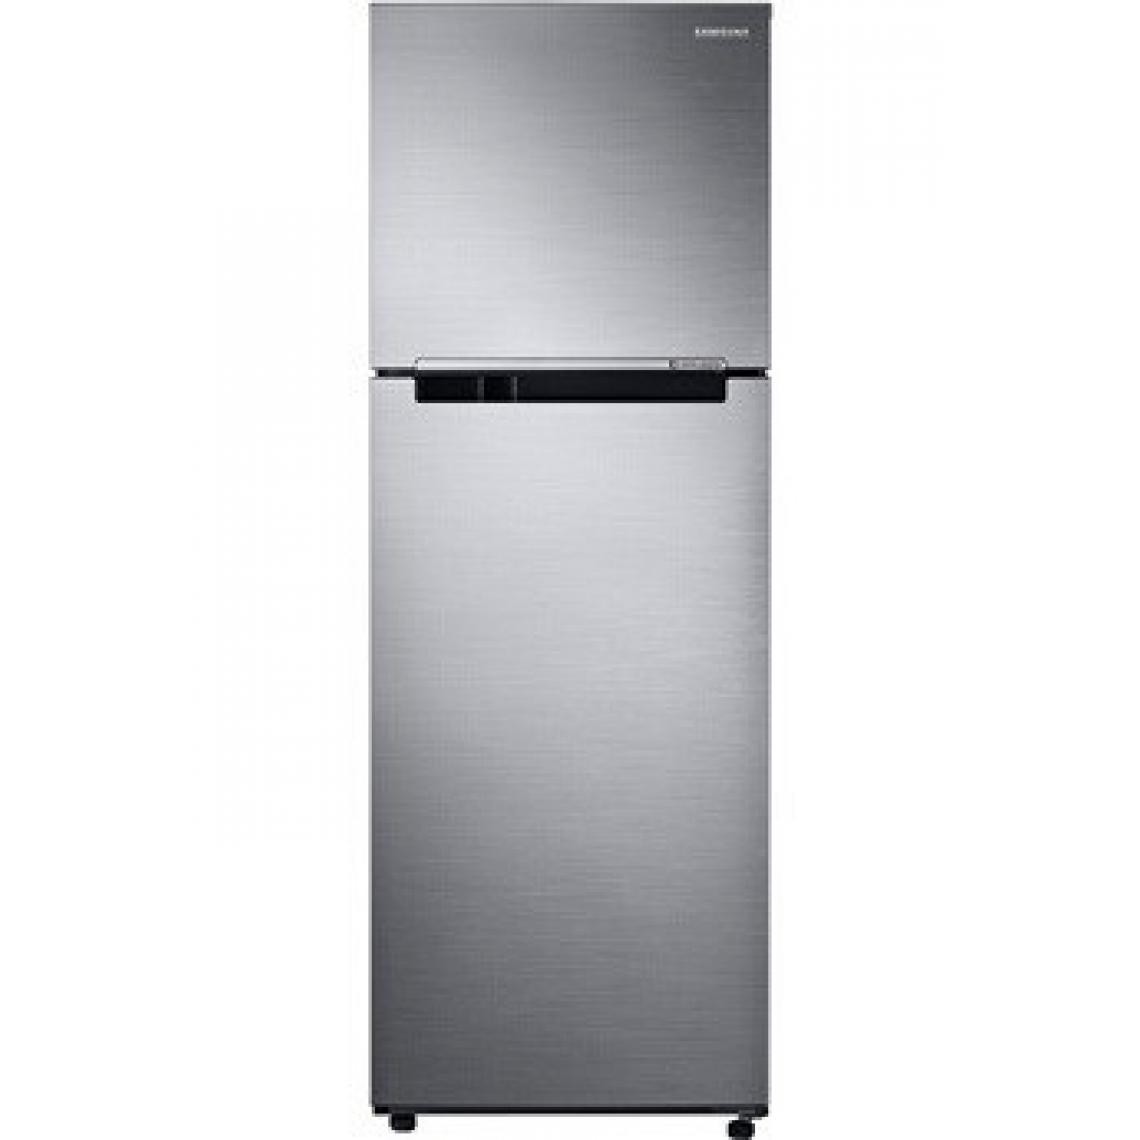 Samsung - Refrigerateur congelateur en haut Samsung RT32K5000S9 SILVER - Réfrigérateur